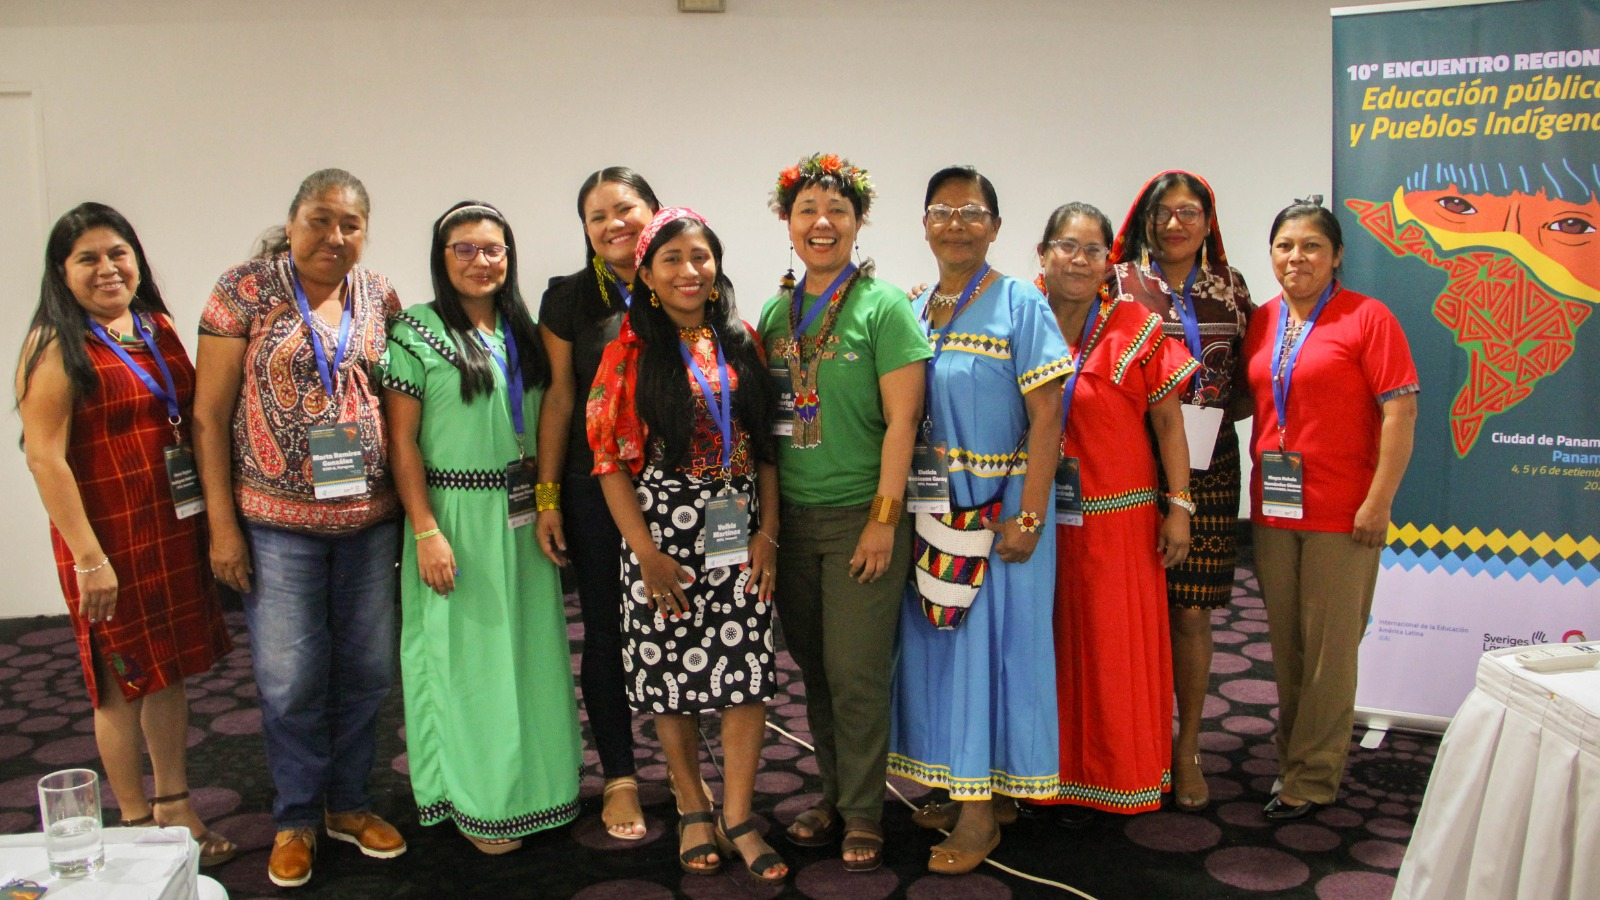 10º Encuentro Regional de Educación Pública y Pueblos Indígenas: educadoras indígenas toman la palabra